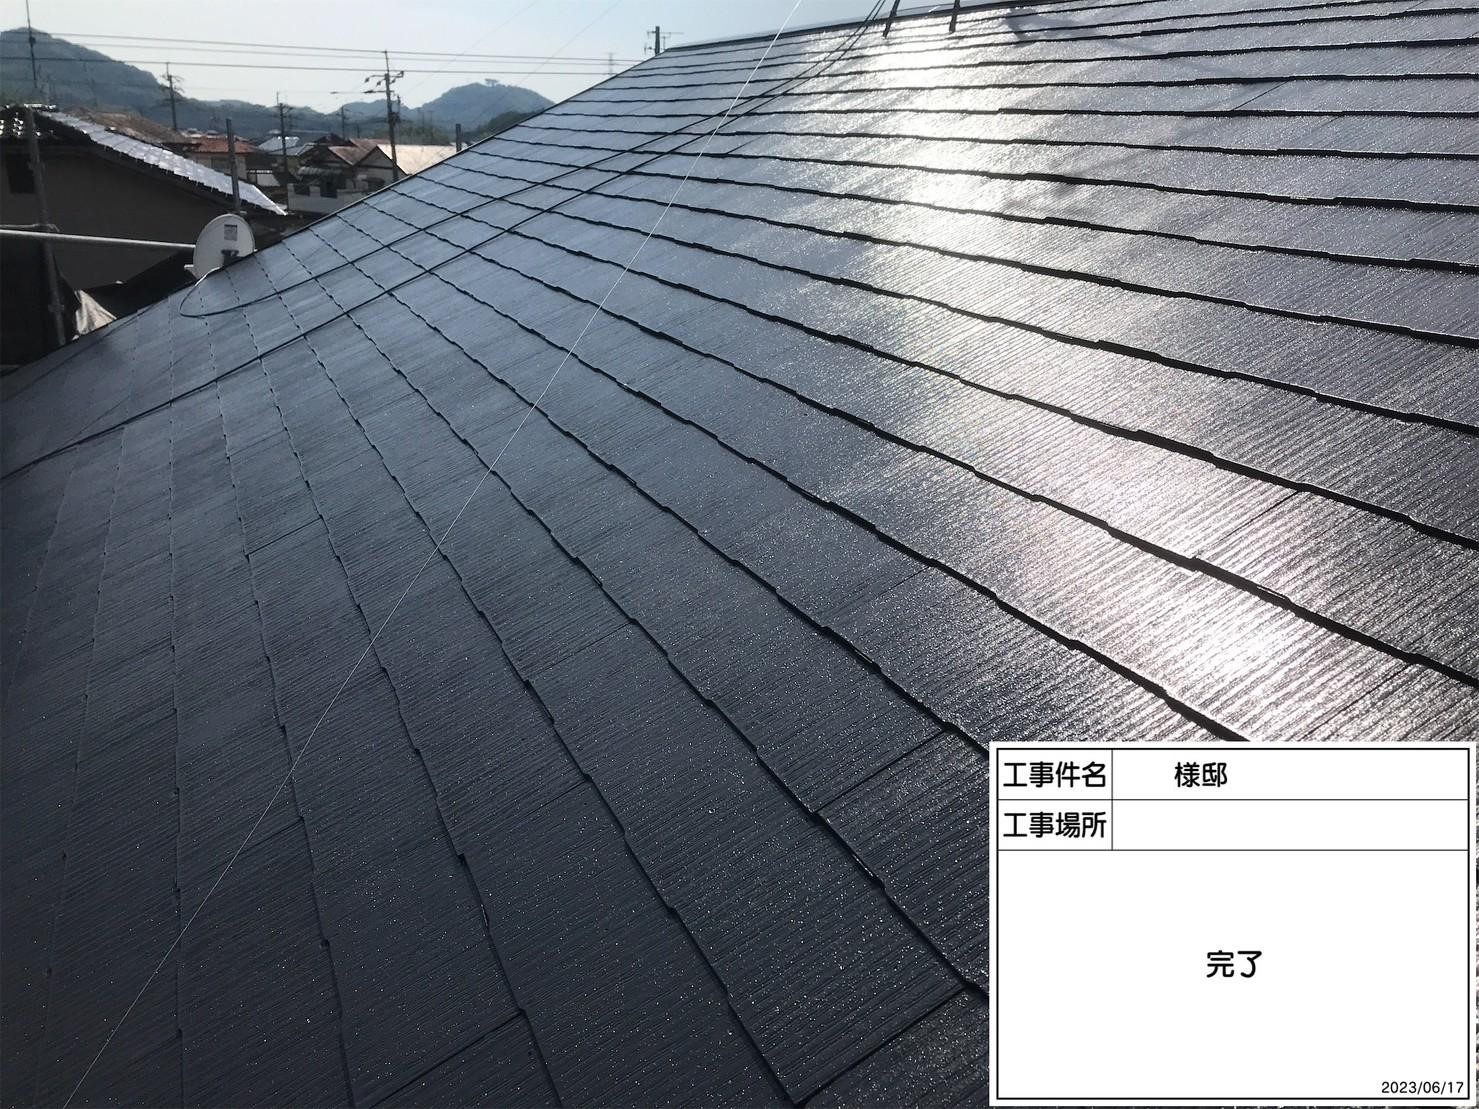 福岡県古賀市青柳町のY様邸で色あせが起きている屋根の塗装工事を行いました。6/23完成です。【ホームページより】